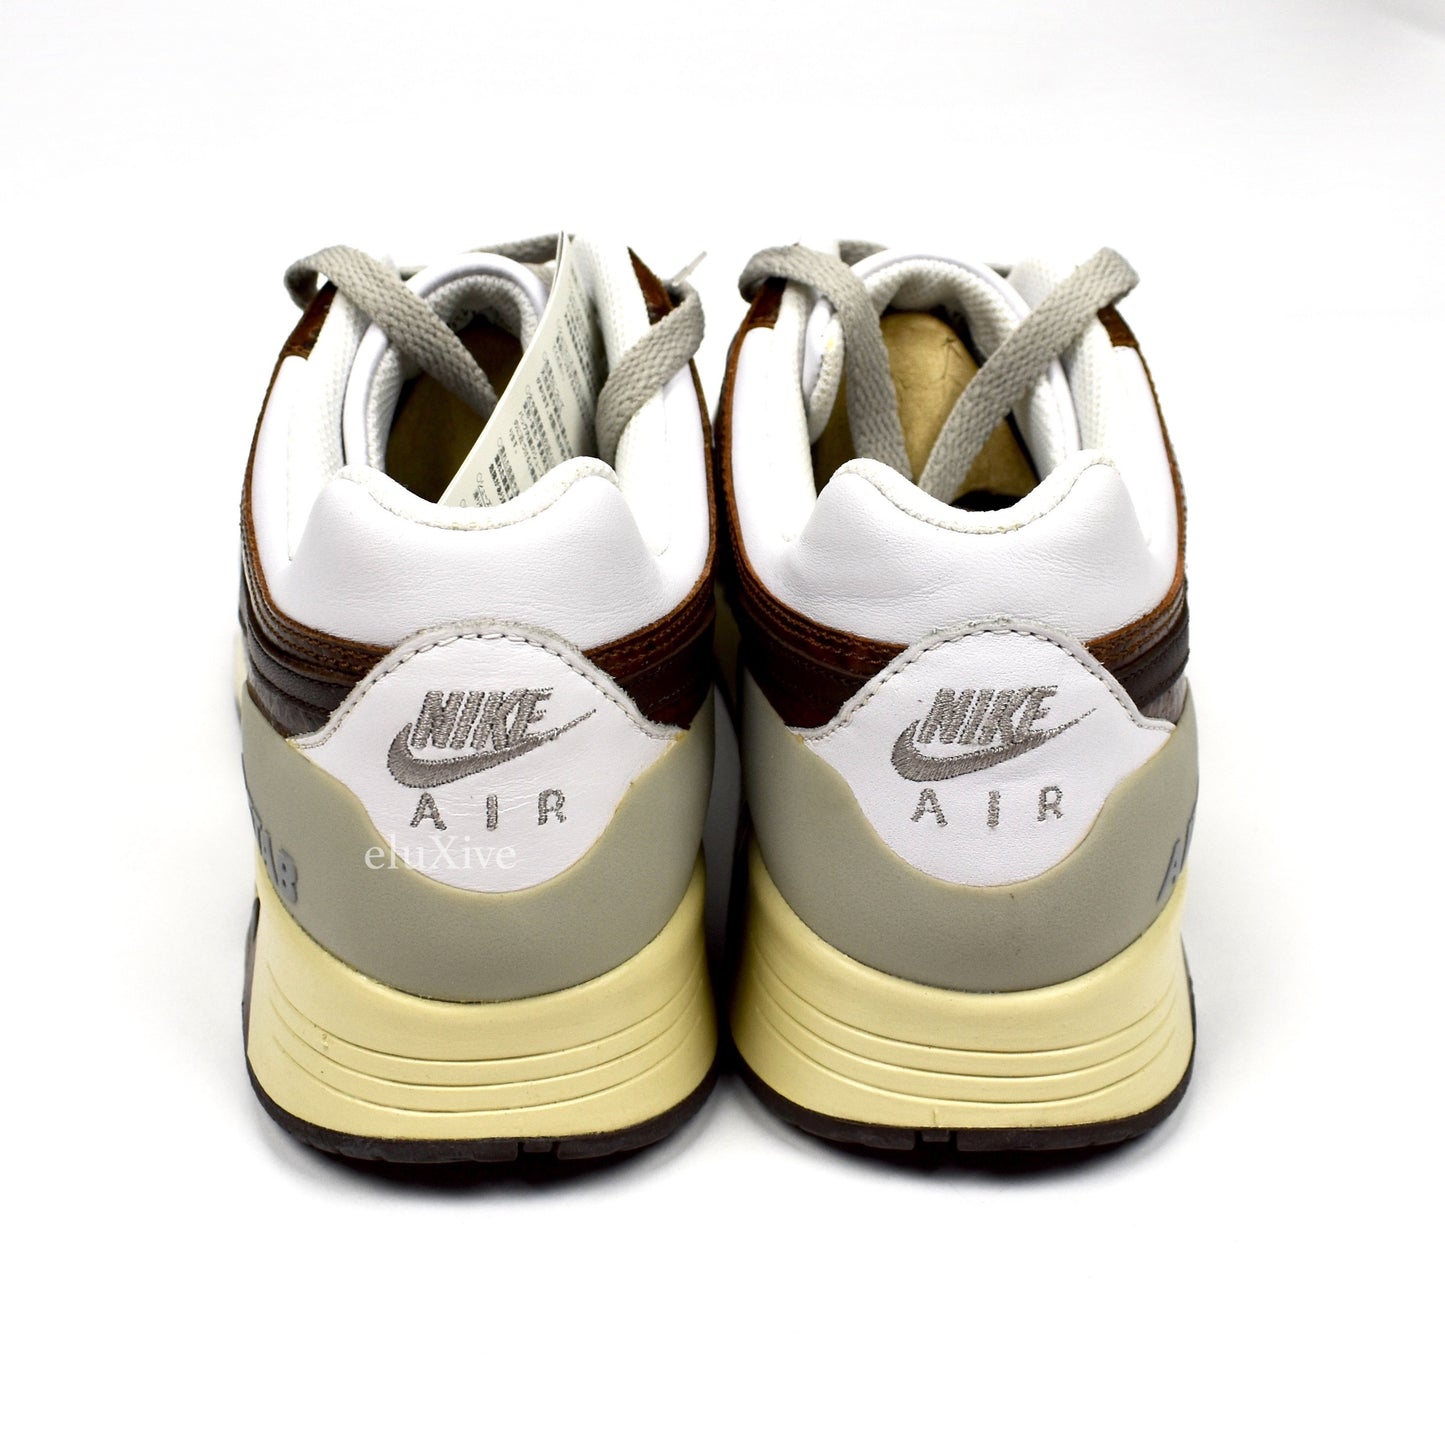 Nike - Air Stab Premium 'Escape' (White/Baroque Brown)